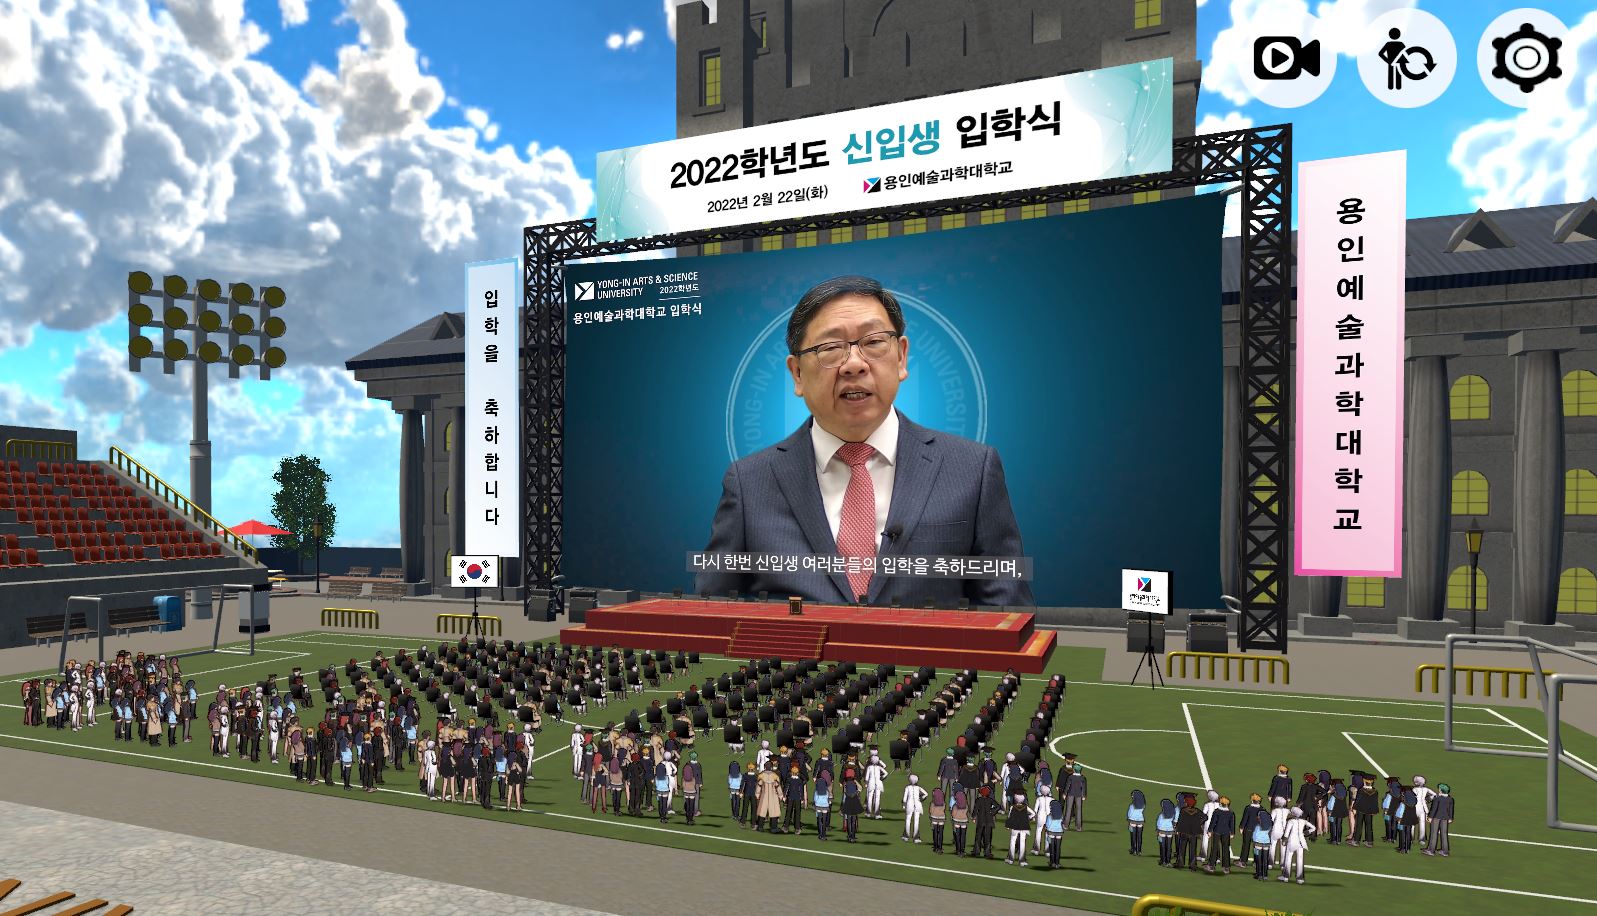 용인예술과학대학교, 메타버스로 2022년 신입생 입학식 개최.jpg